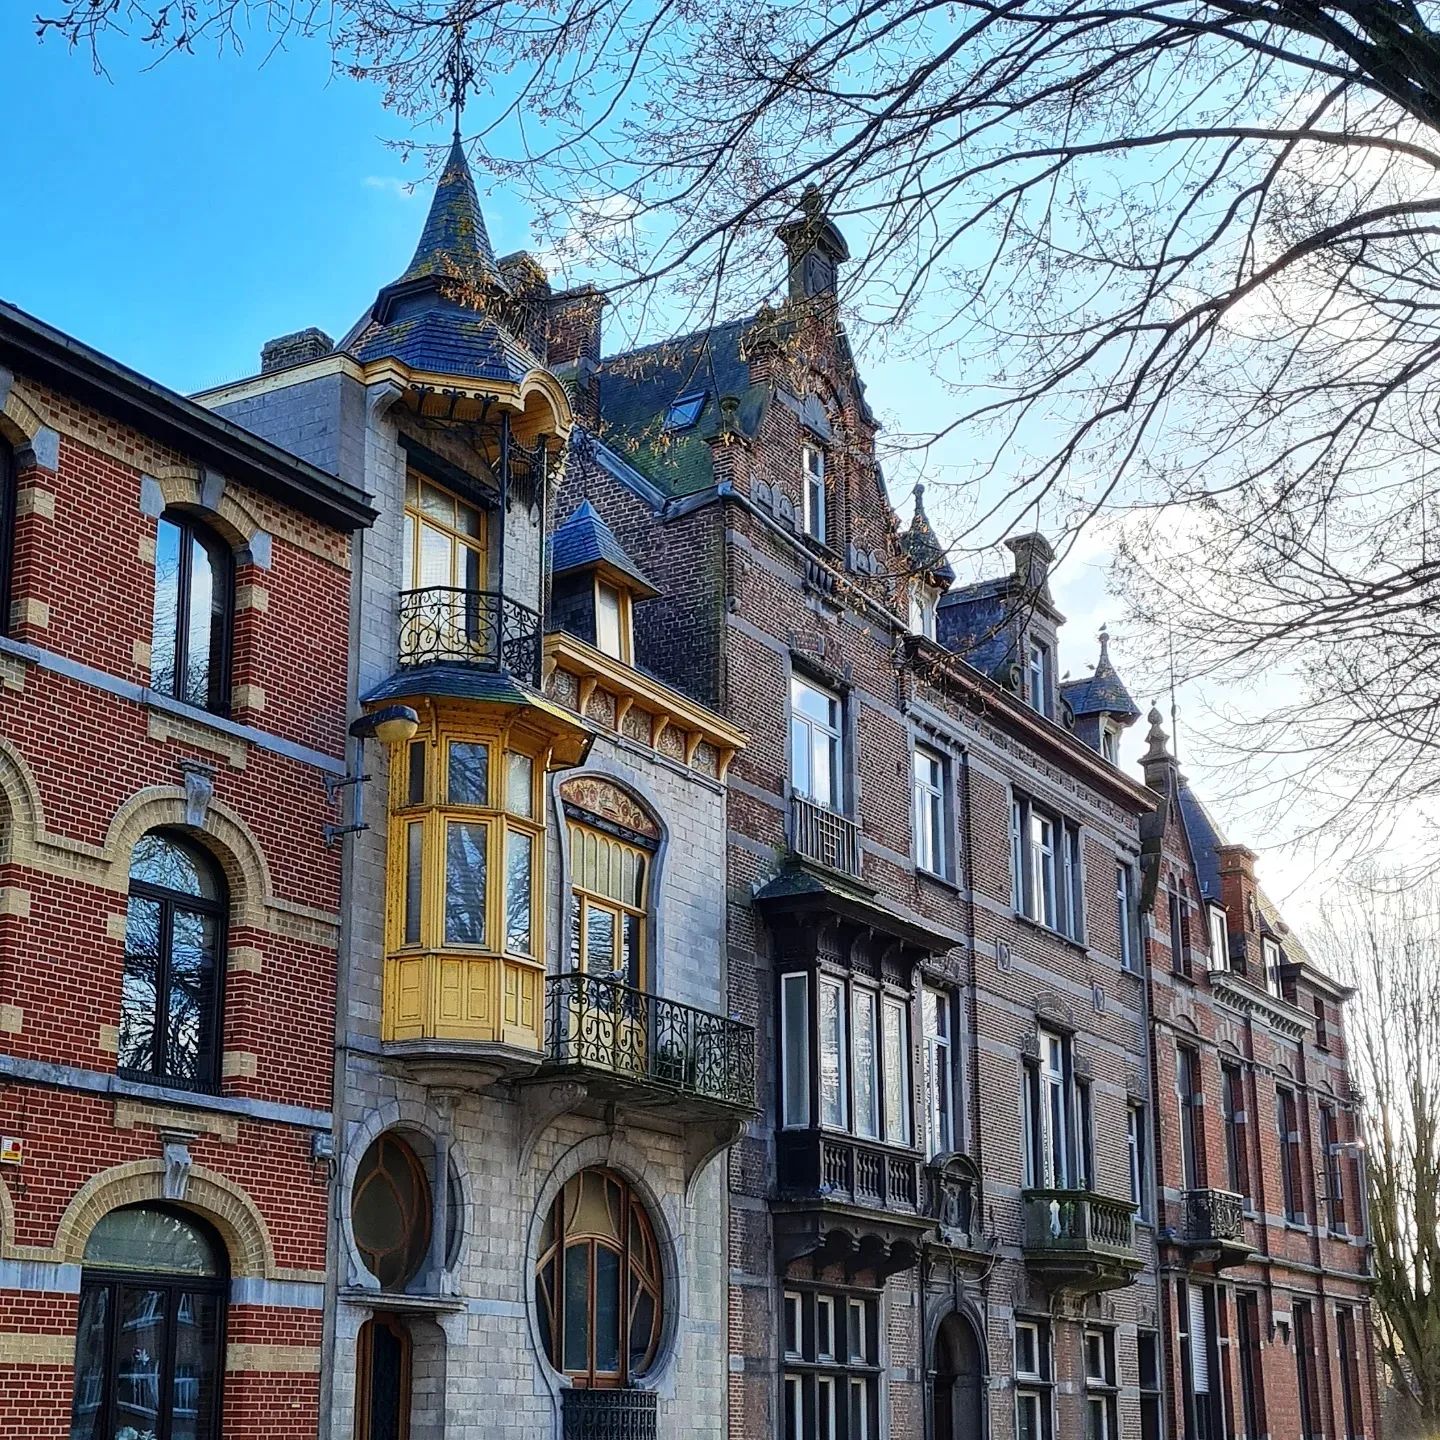 🧐 Samedi dernier lors de ma balade à Tournai j'ai découvert ses belles maisons art nouveau.

🍃 Vous connaissez ce style ? On le reconnaît à ses courbes extravagantes et ses motifs végétaux. 

👉 À Lille le meilleur exemple est la maison Coilliot. Vous la connaissez ? 

↪ L'architecte de cette belle maison est Geroges De Poore. Elle date de 1903.
.
.
.
☆------------------------------------------------☆
#artnouveau #architecture #archilovers #visittournai #tournai #belgium #wallonie #hainaut  #igersbelgium #visitbelgium #loving_belgium #promenade #winter #hiver  #oldcity #citytrip #walkinthecity #topbelgiumphoto 
#landscapephotography  #eurometropole #ig_europe #tourismebelge